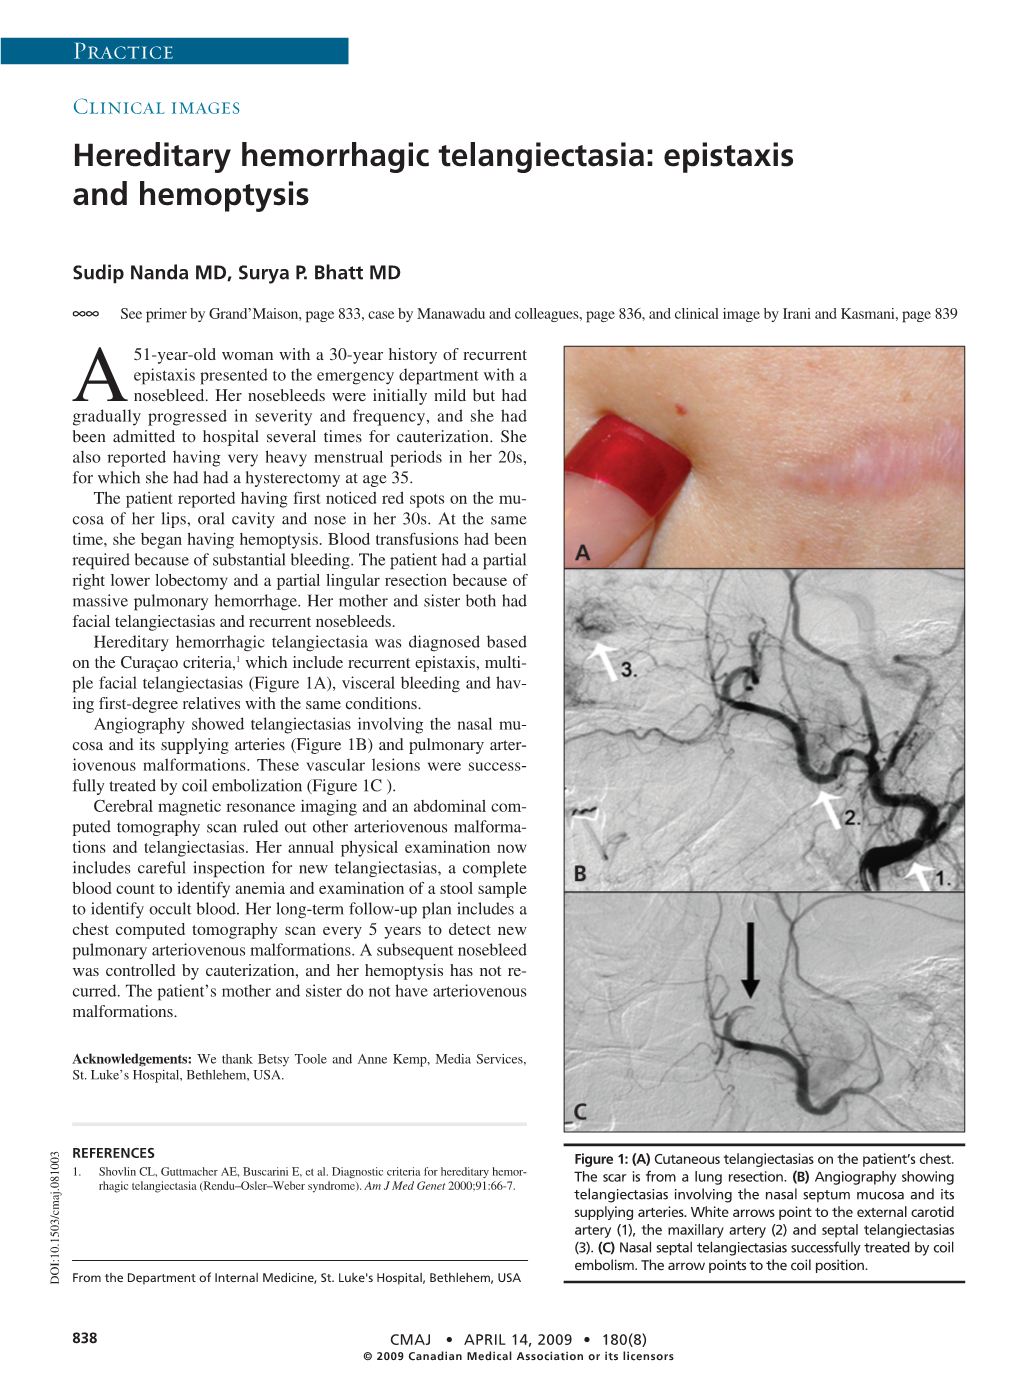 Hereditary Hemorrhagic Telangiectasia: Epistaxis and Hemoptysis